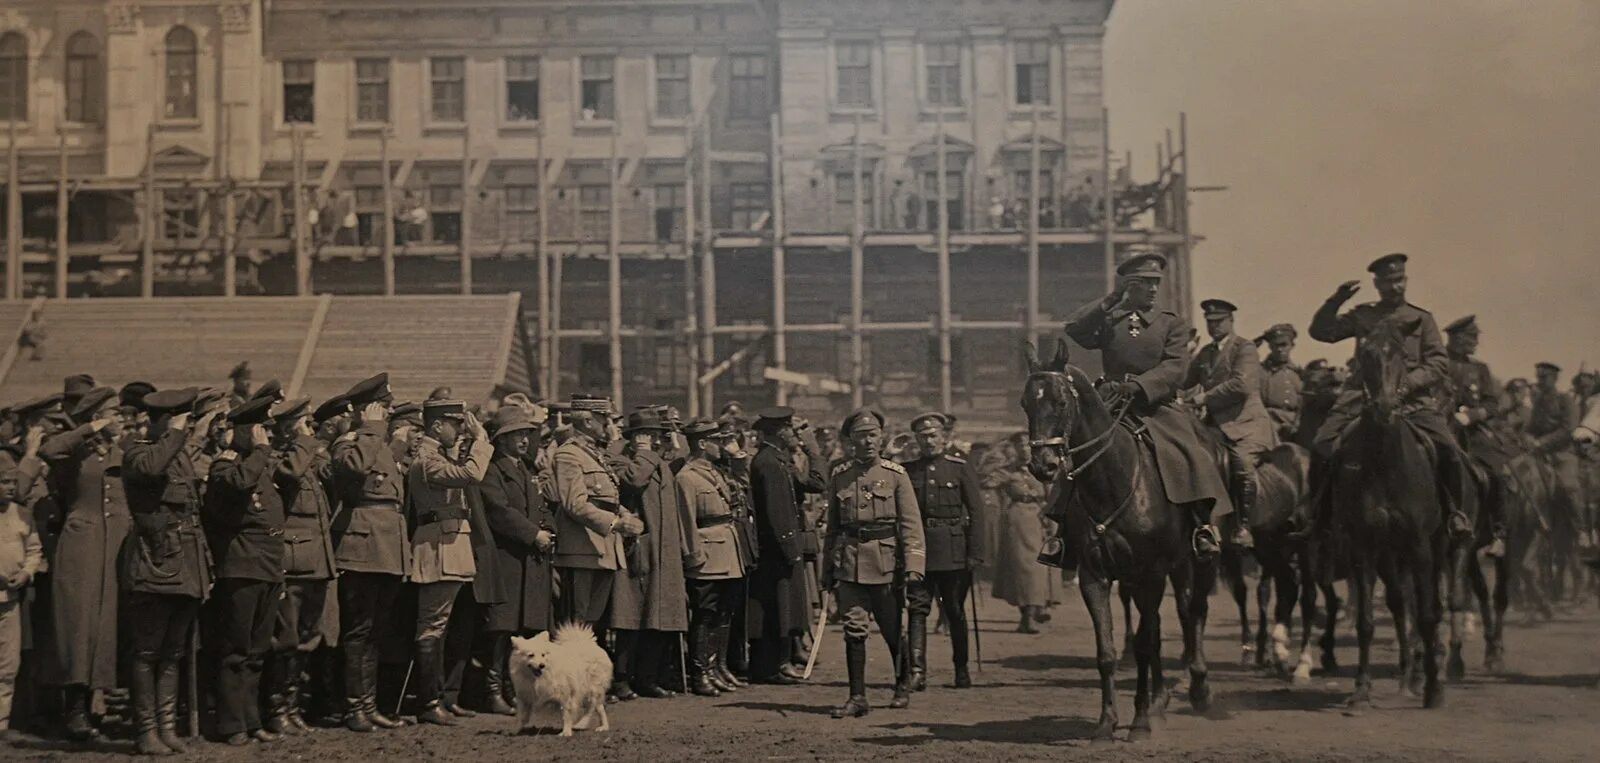 Правительство во главе с колчаком город. Адмирал Колчак 1919. Колчак Омск 1918. Колчак в Омске 1919. Колчак парад в Омске.